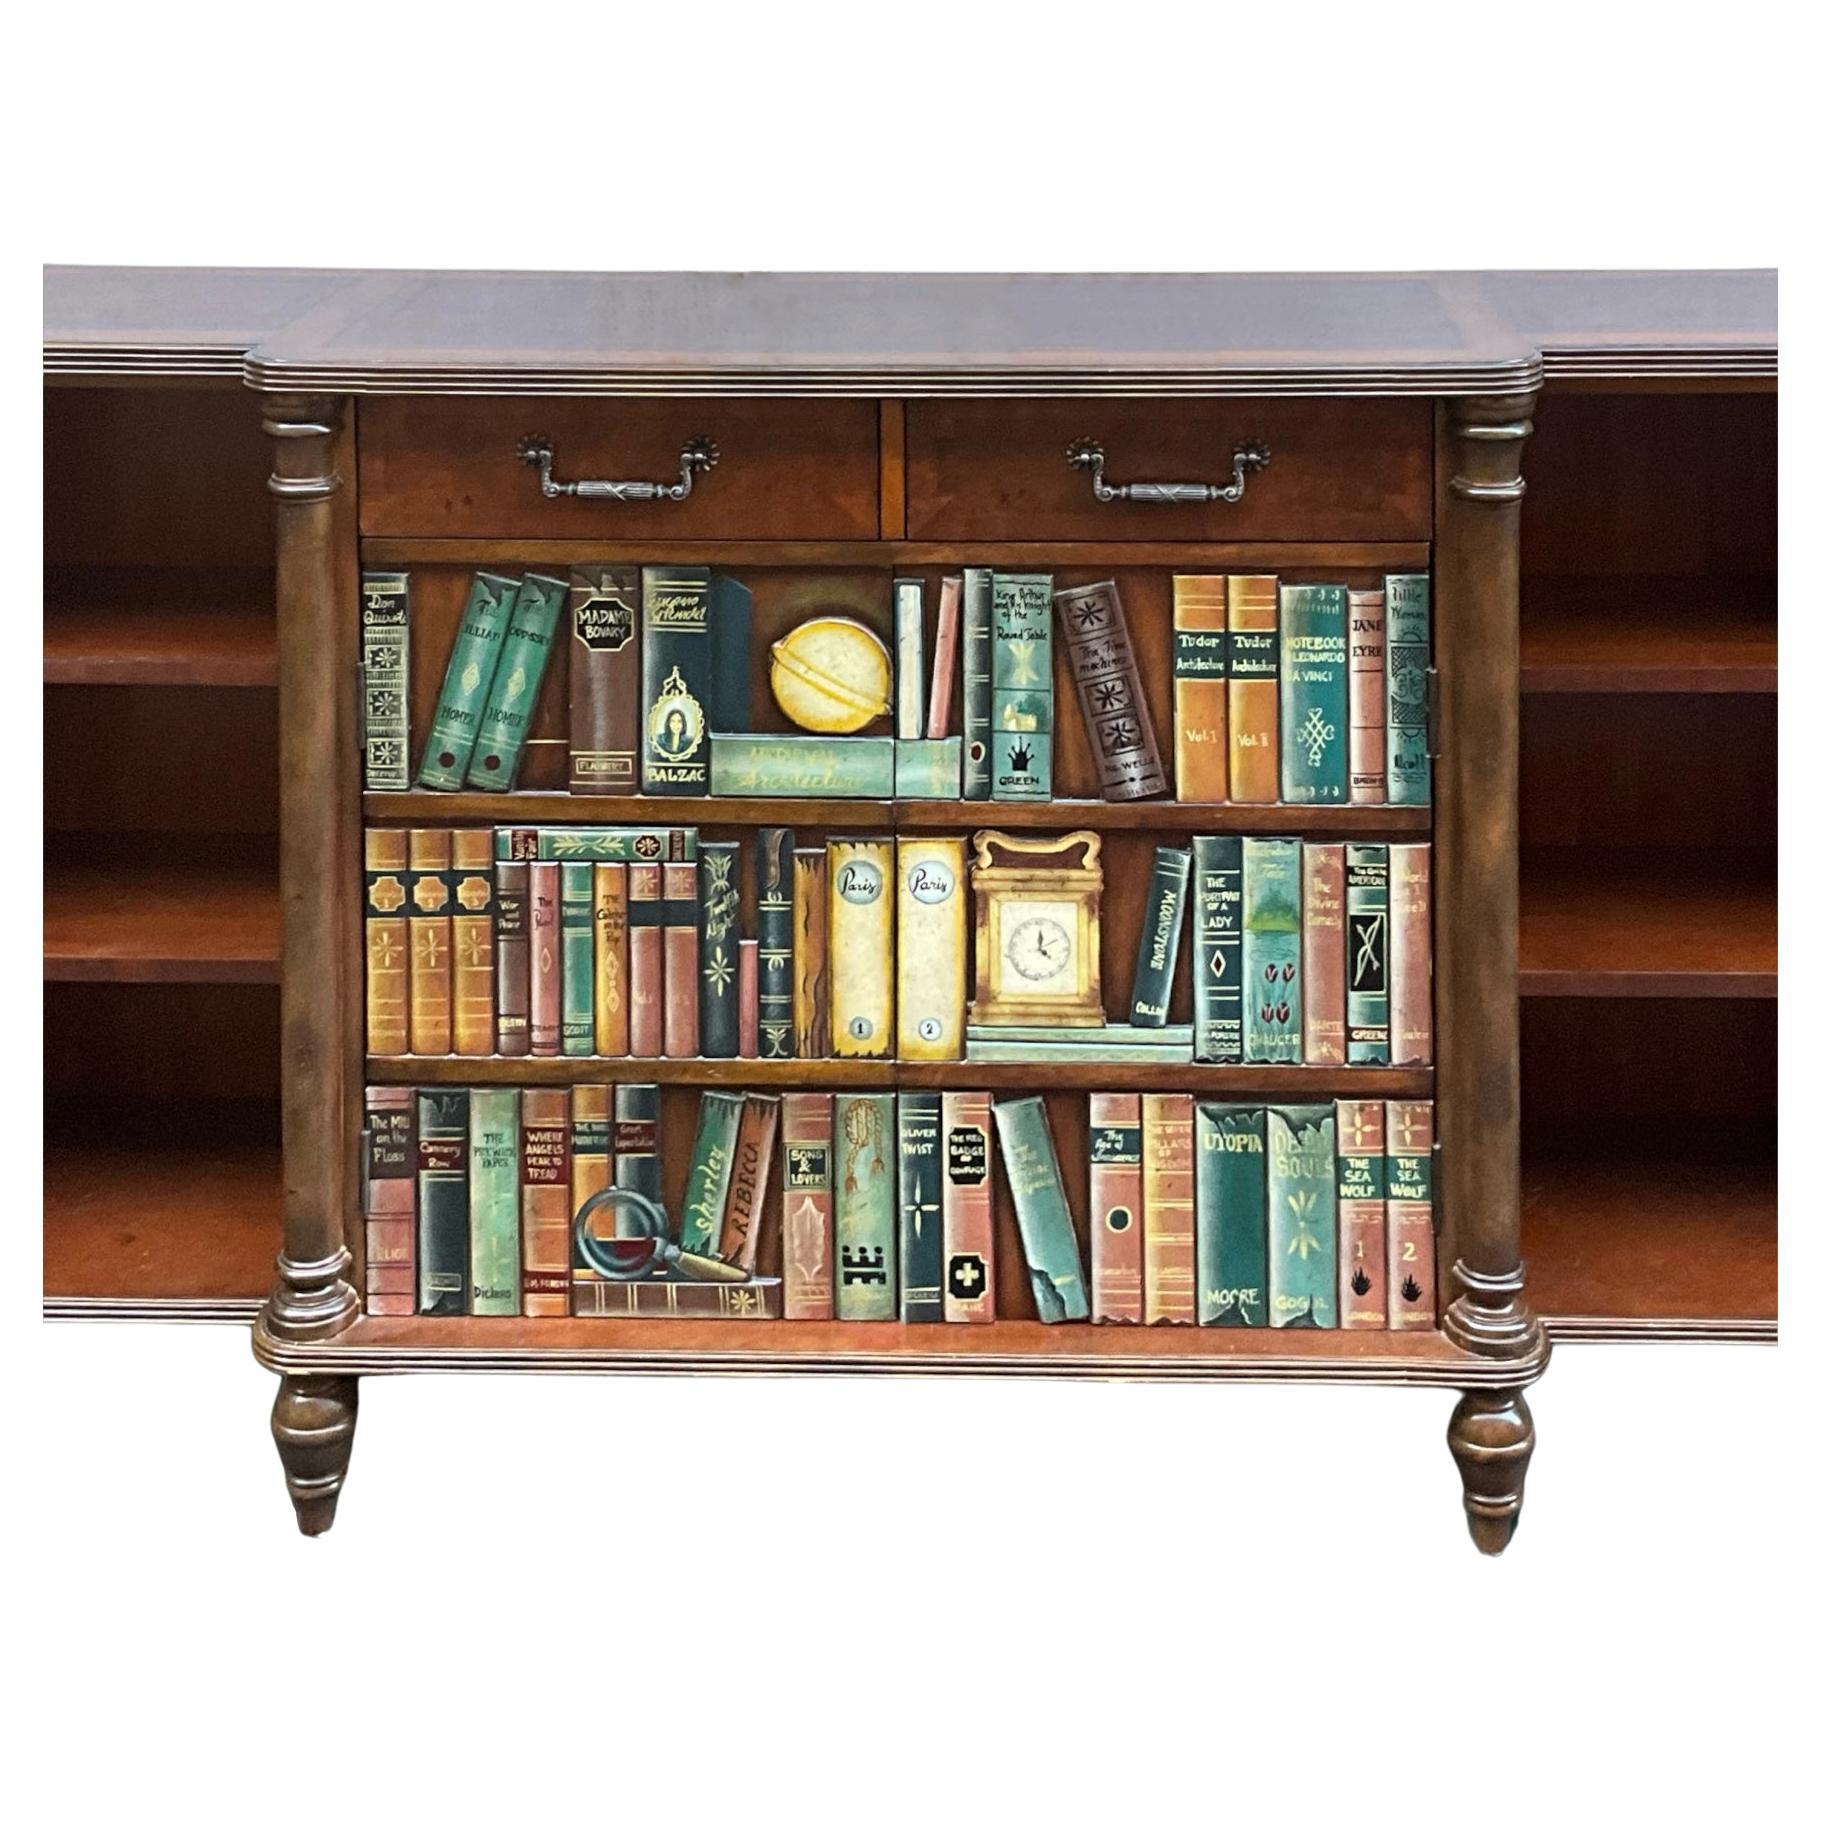 Il s'agit d'un remarquable meuble à livres en trompe-l'oeil de style édouardien avec dessus en cuir de Maitland-Smith. La façade en faux livre s'ouvre sur un espace de rangement supplémentaire. Il est en très bon état et est marqué. 

Mes frais de